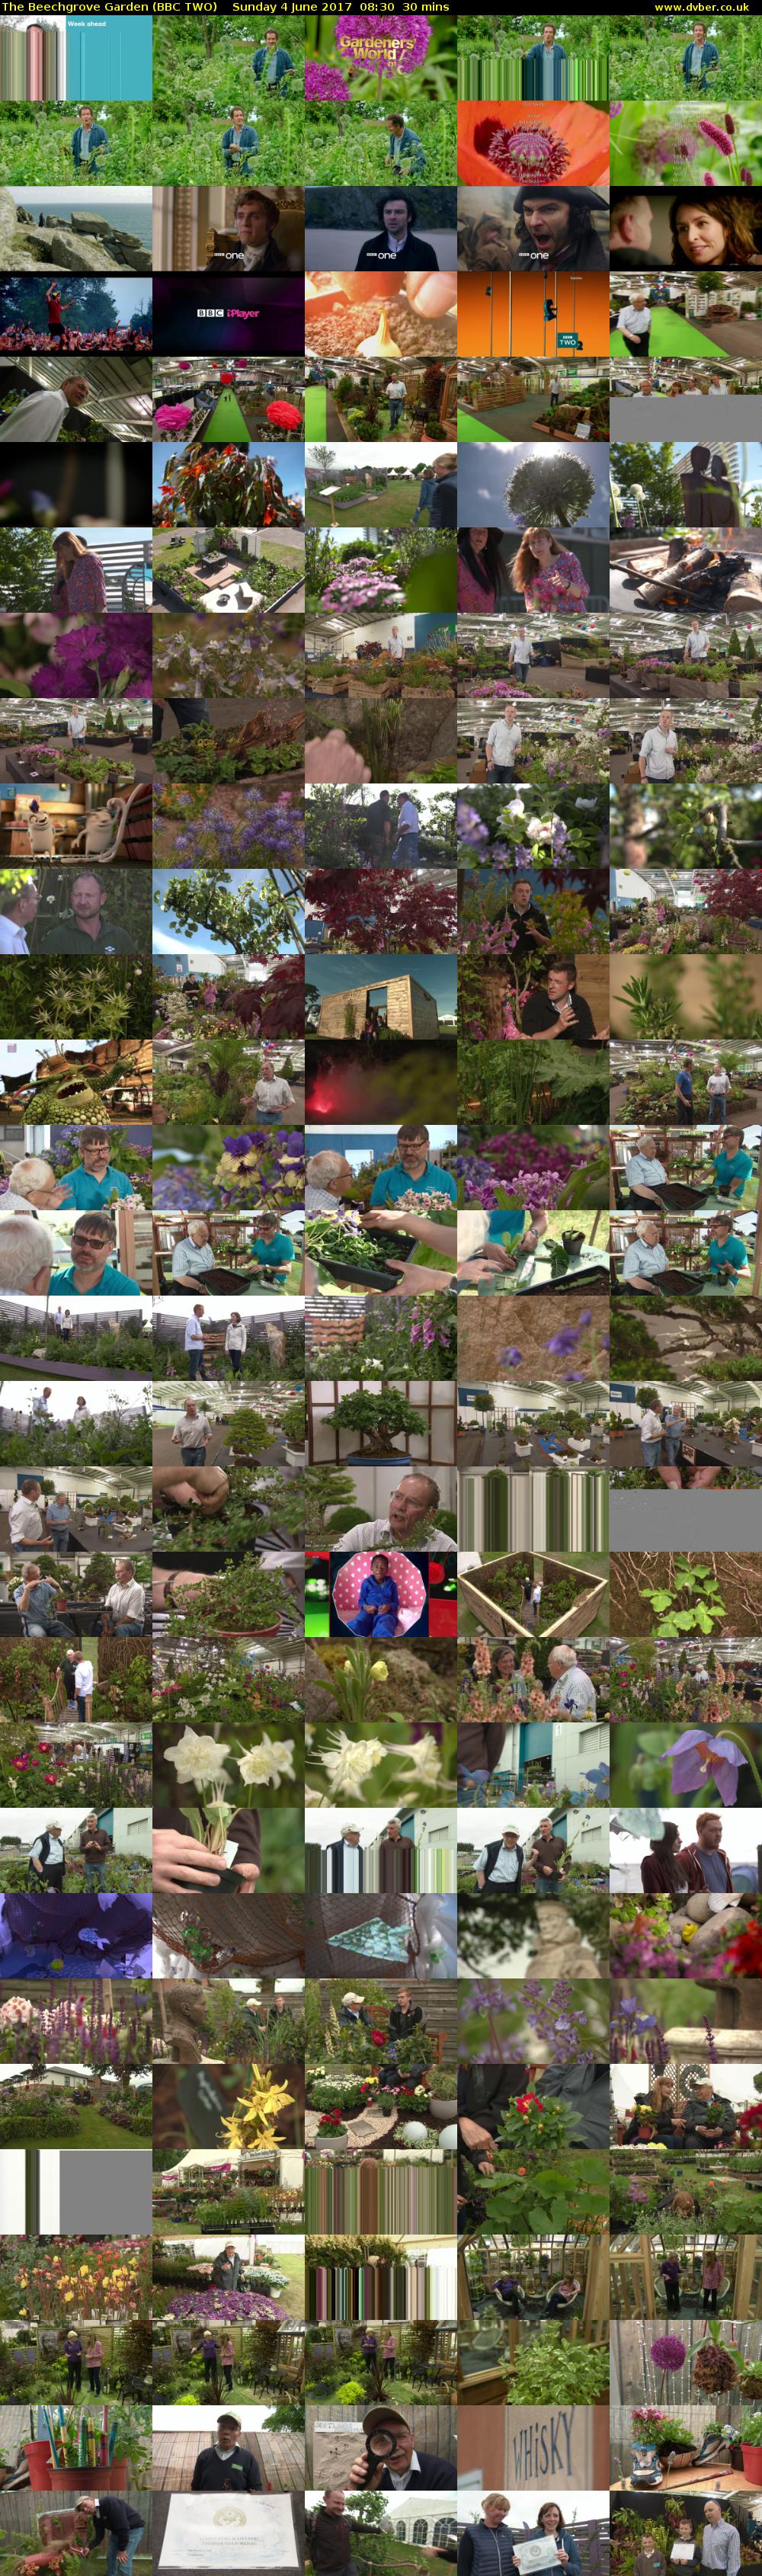 The Beechgrove Garden (BBC TWO) Sunday 4 June 2017 08:30 - 09:00